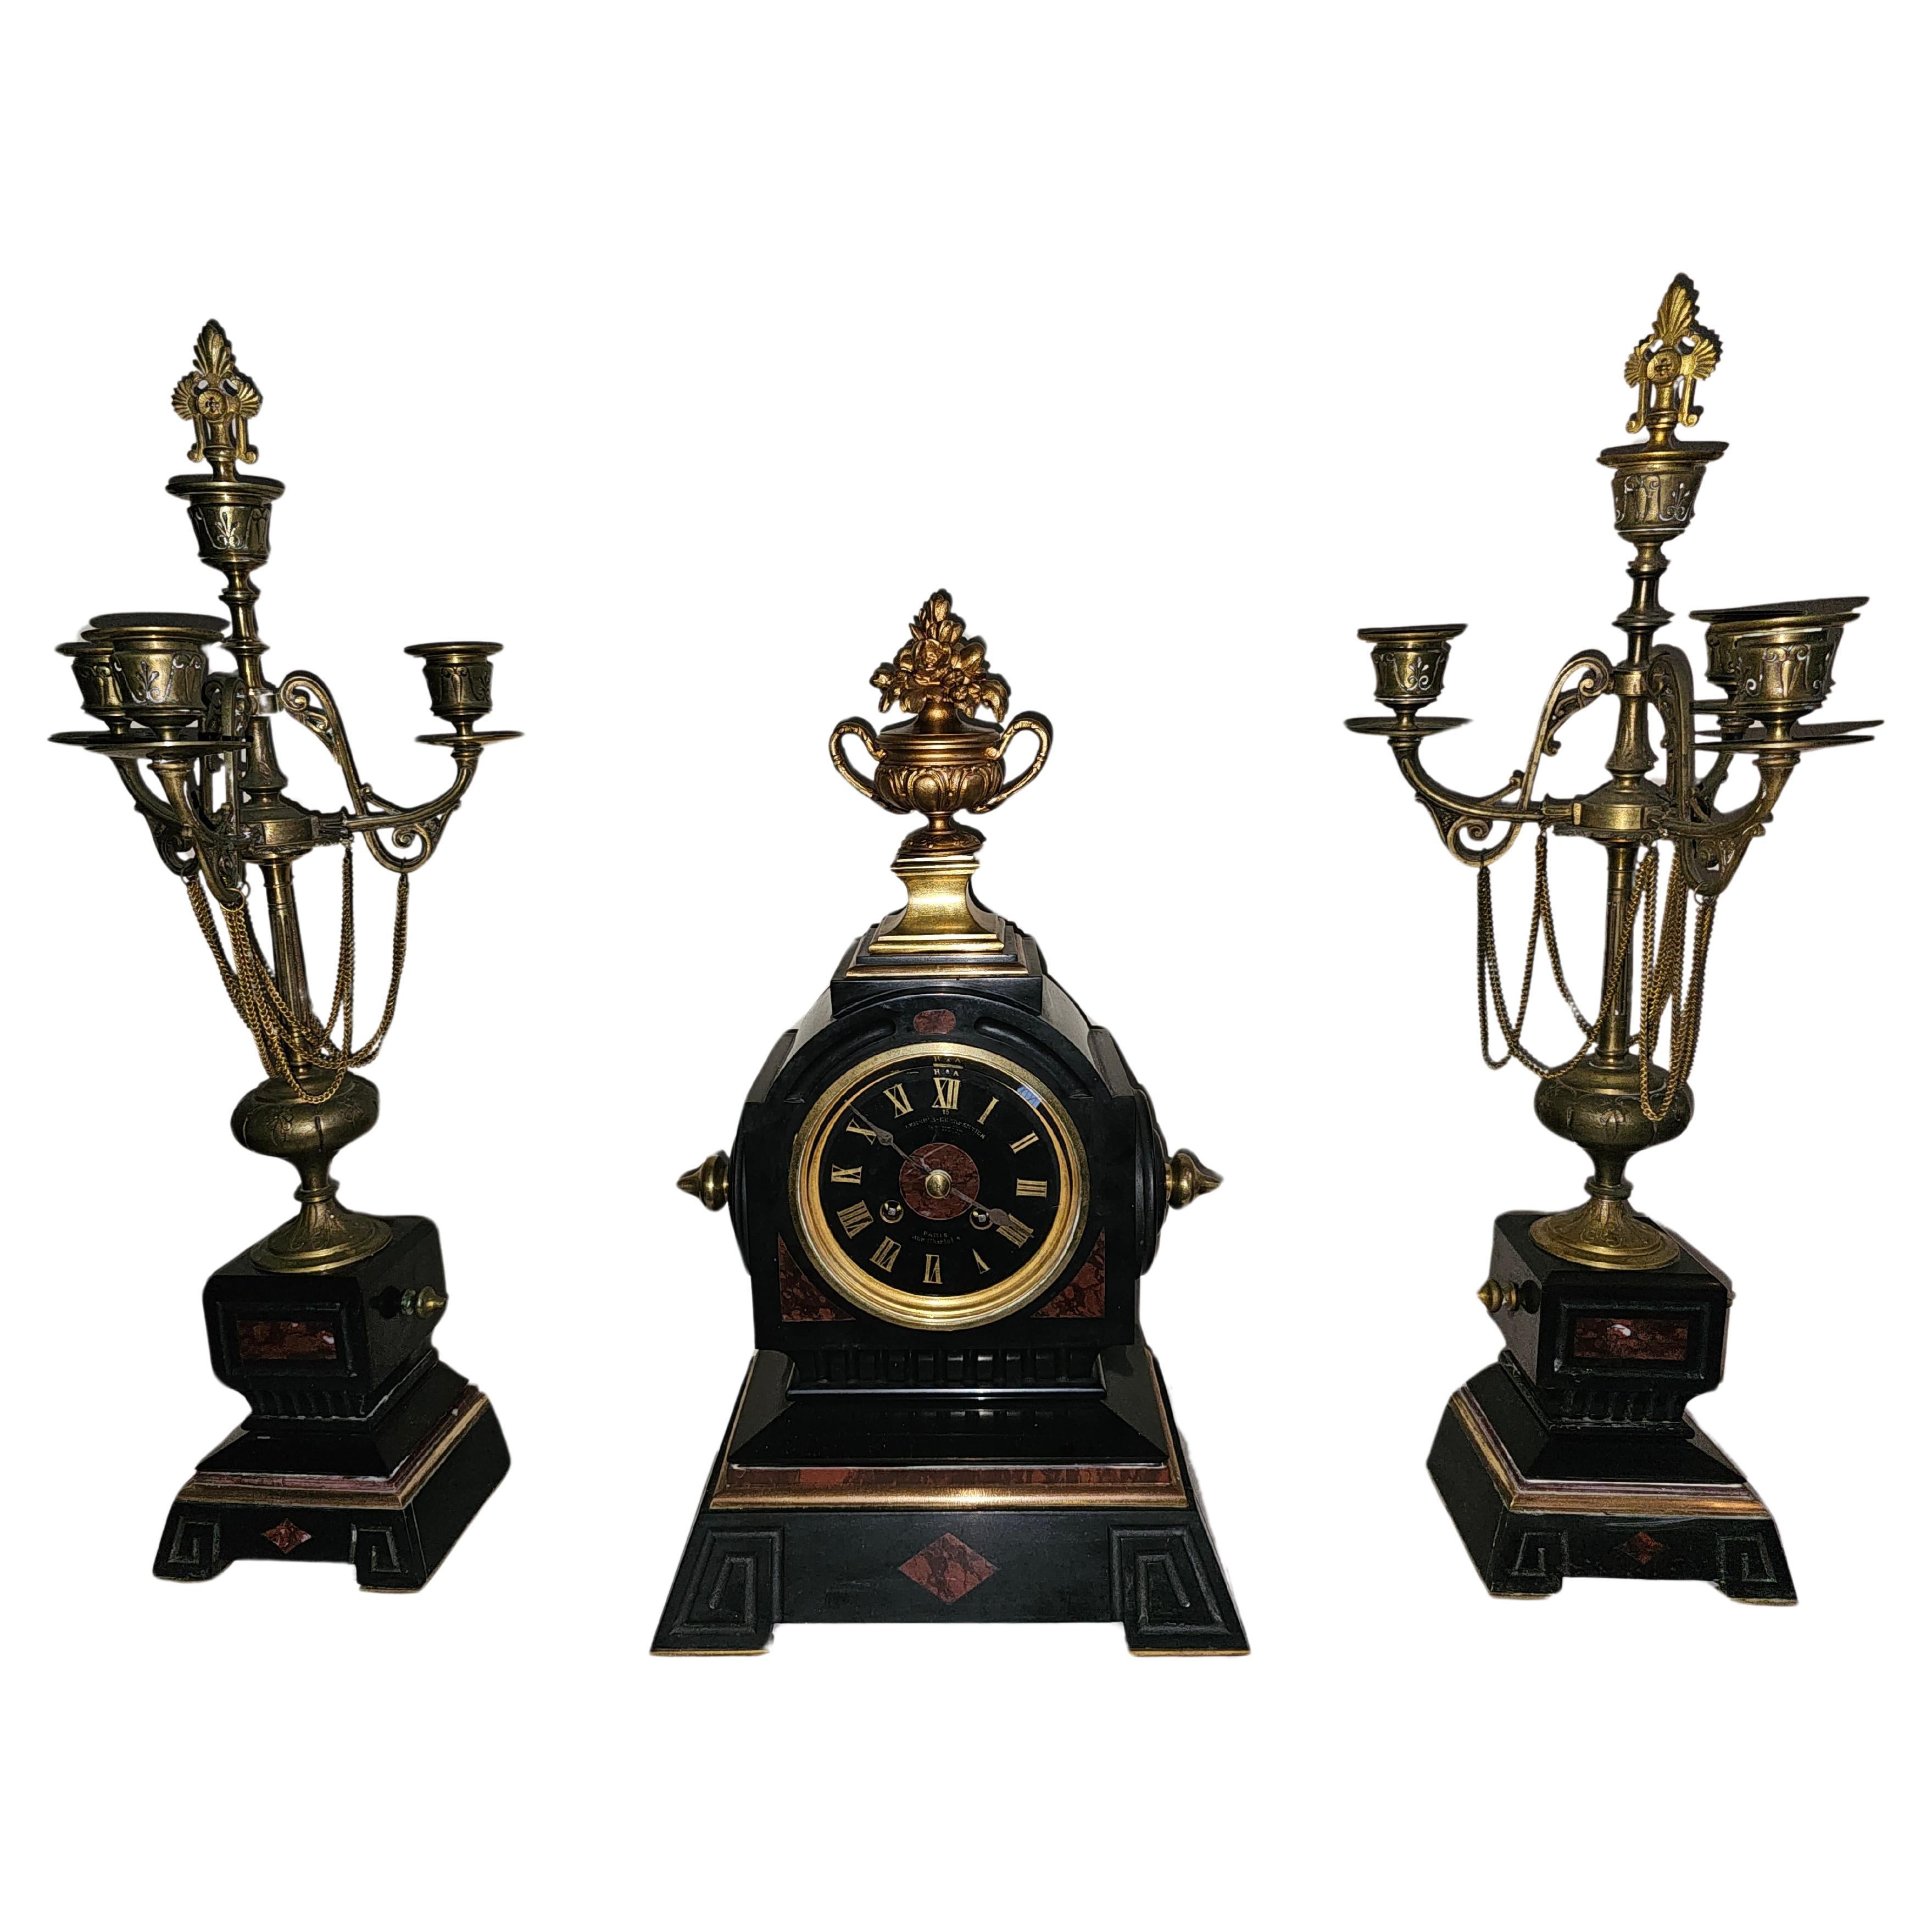 Eine der wenigen Lemerle-Charpentier Bronze Ormolu und roter Marmor Uhr Garnitur aus dem 19. 
Dieses feine Uhrenset ist aus patinierter Bronze und rotem Marmor gefertigt und durchgehend mit exquisitem Ormolu verziert. Es handelt sich um ein Werk von